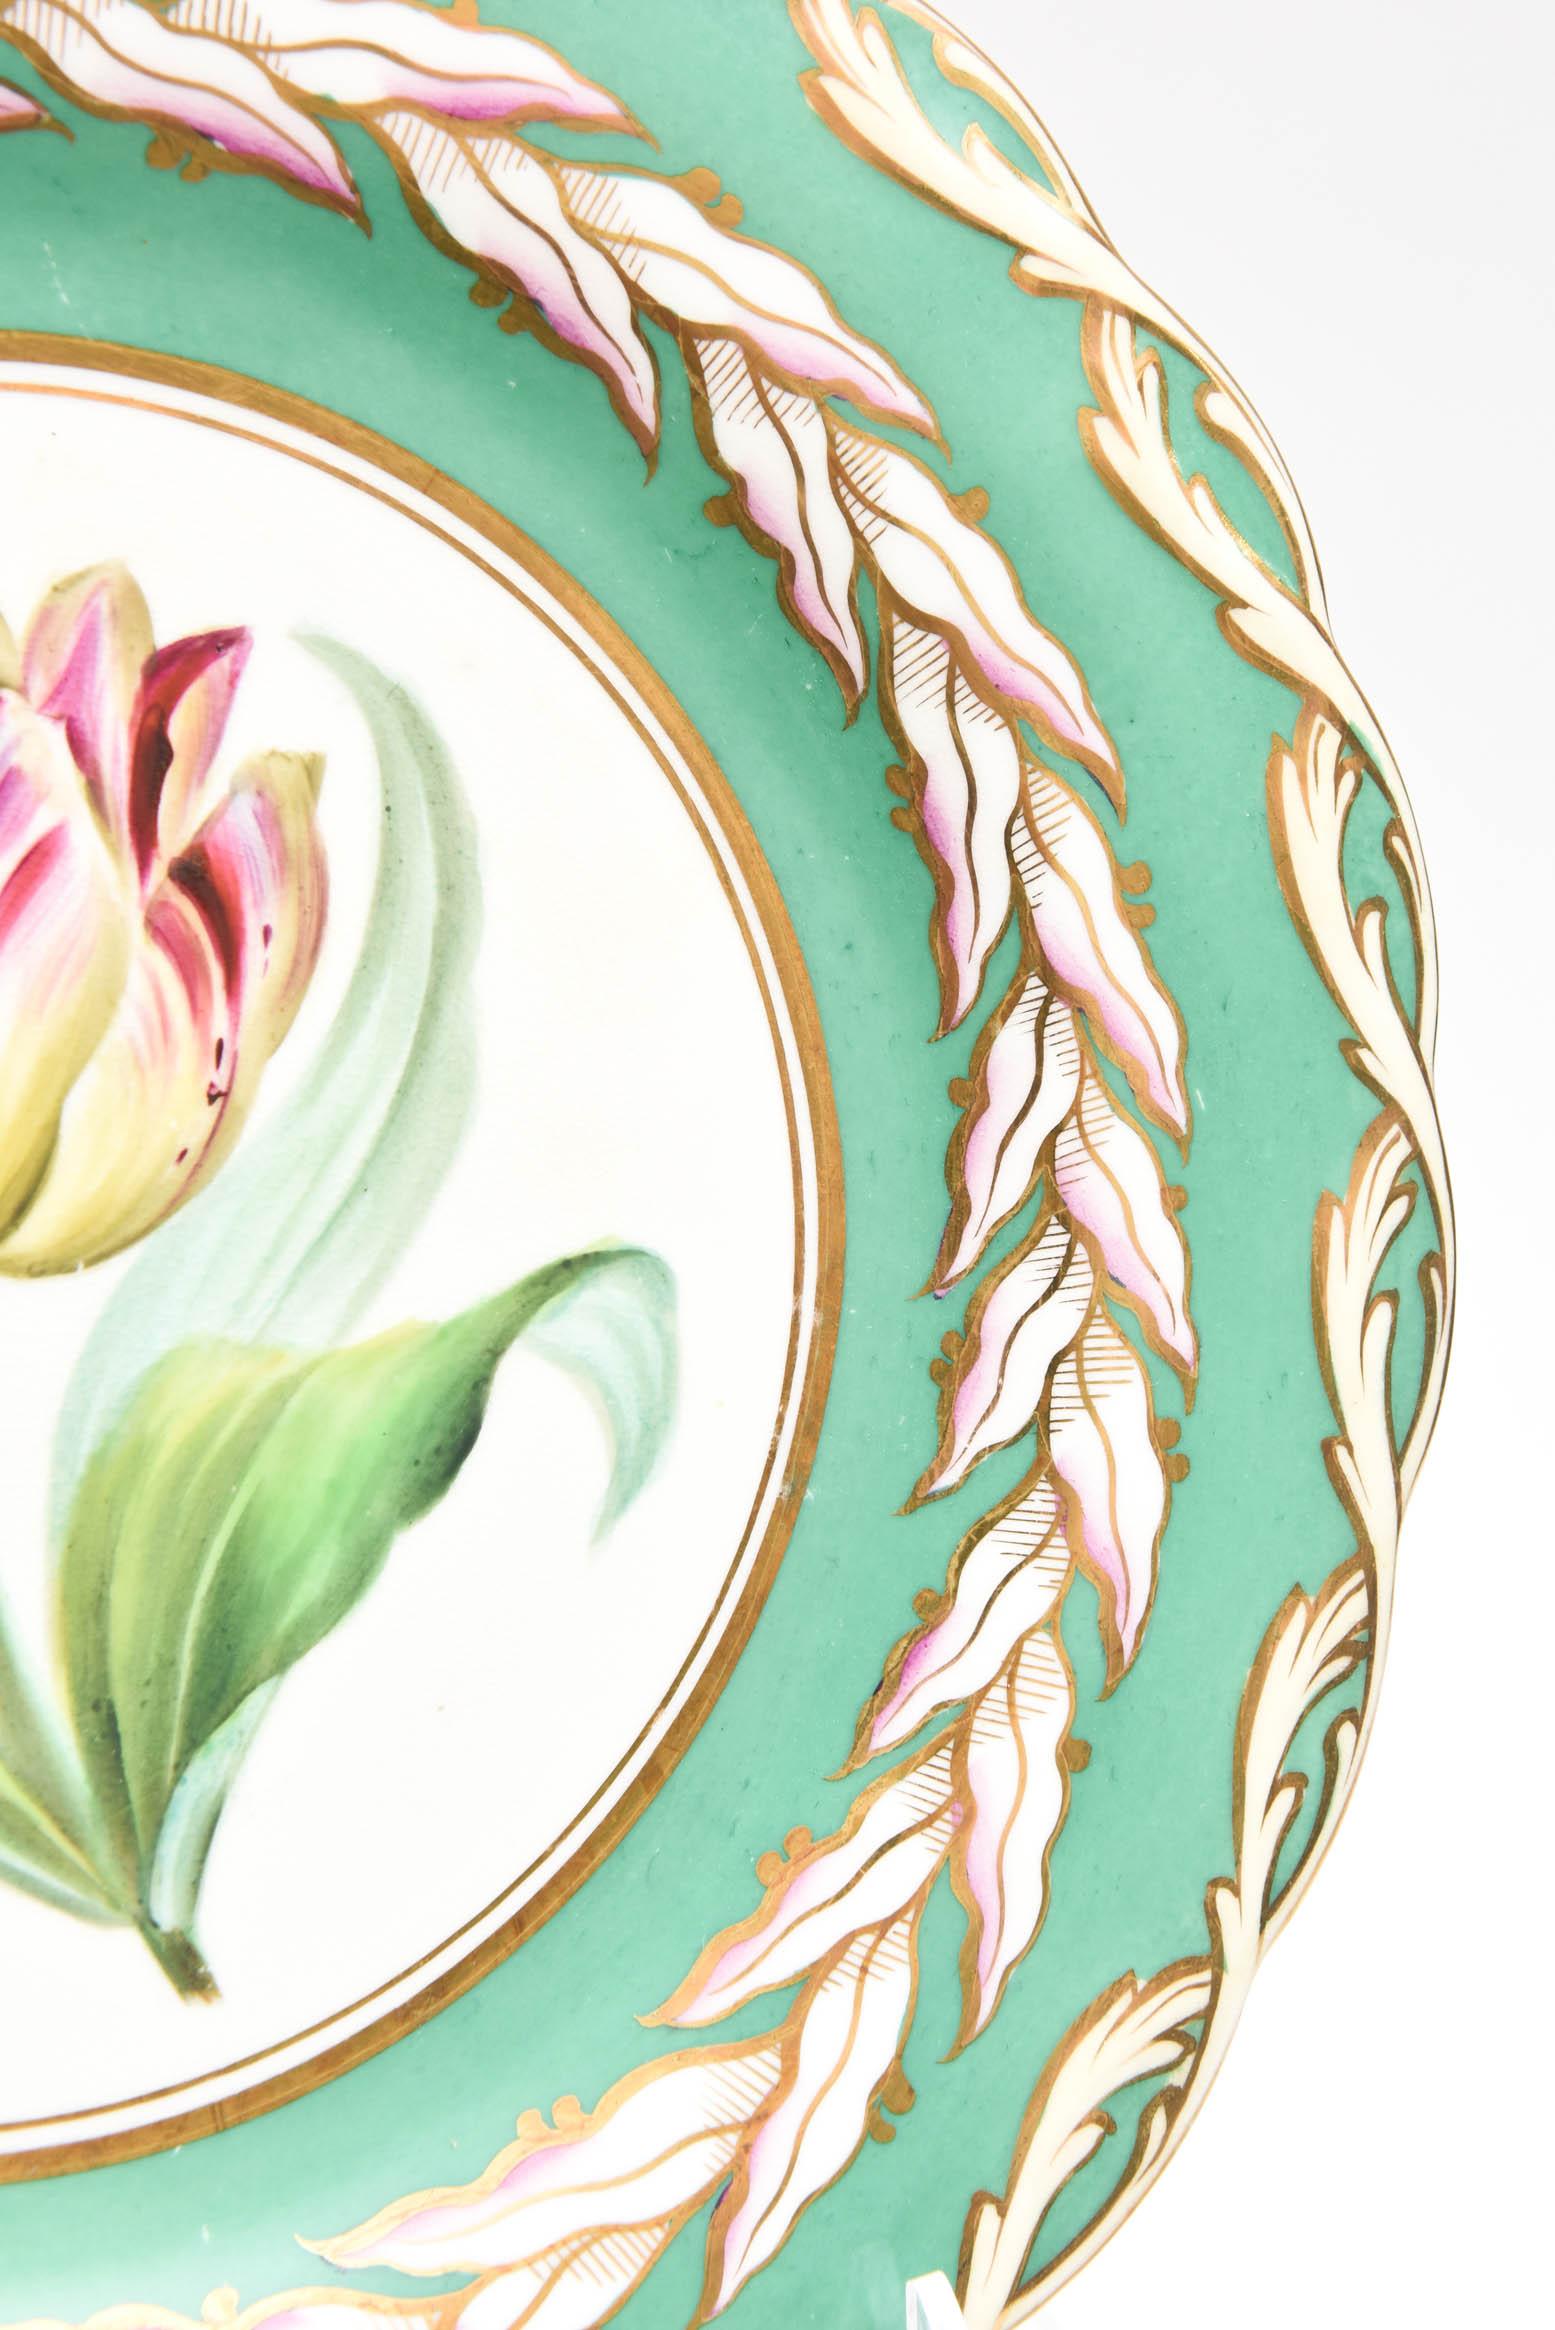 12 Antique Botanical Plates, English Porcelain 19th Century Handpainted Florals 3